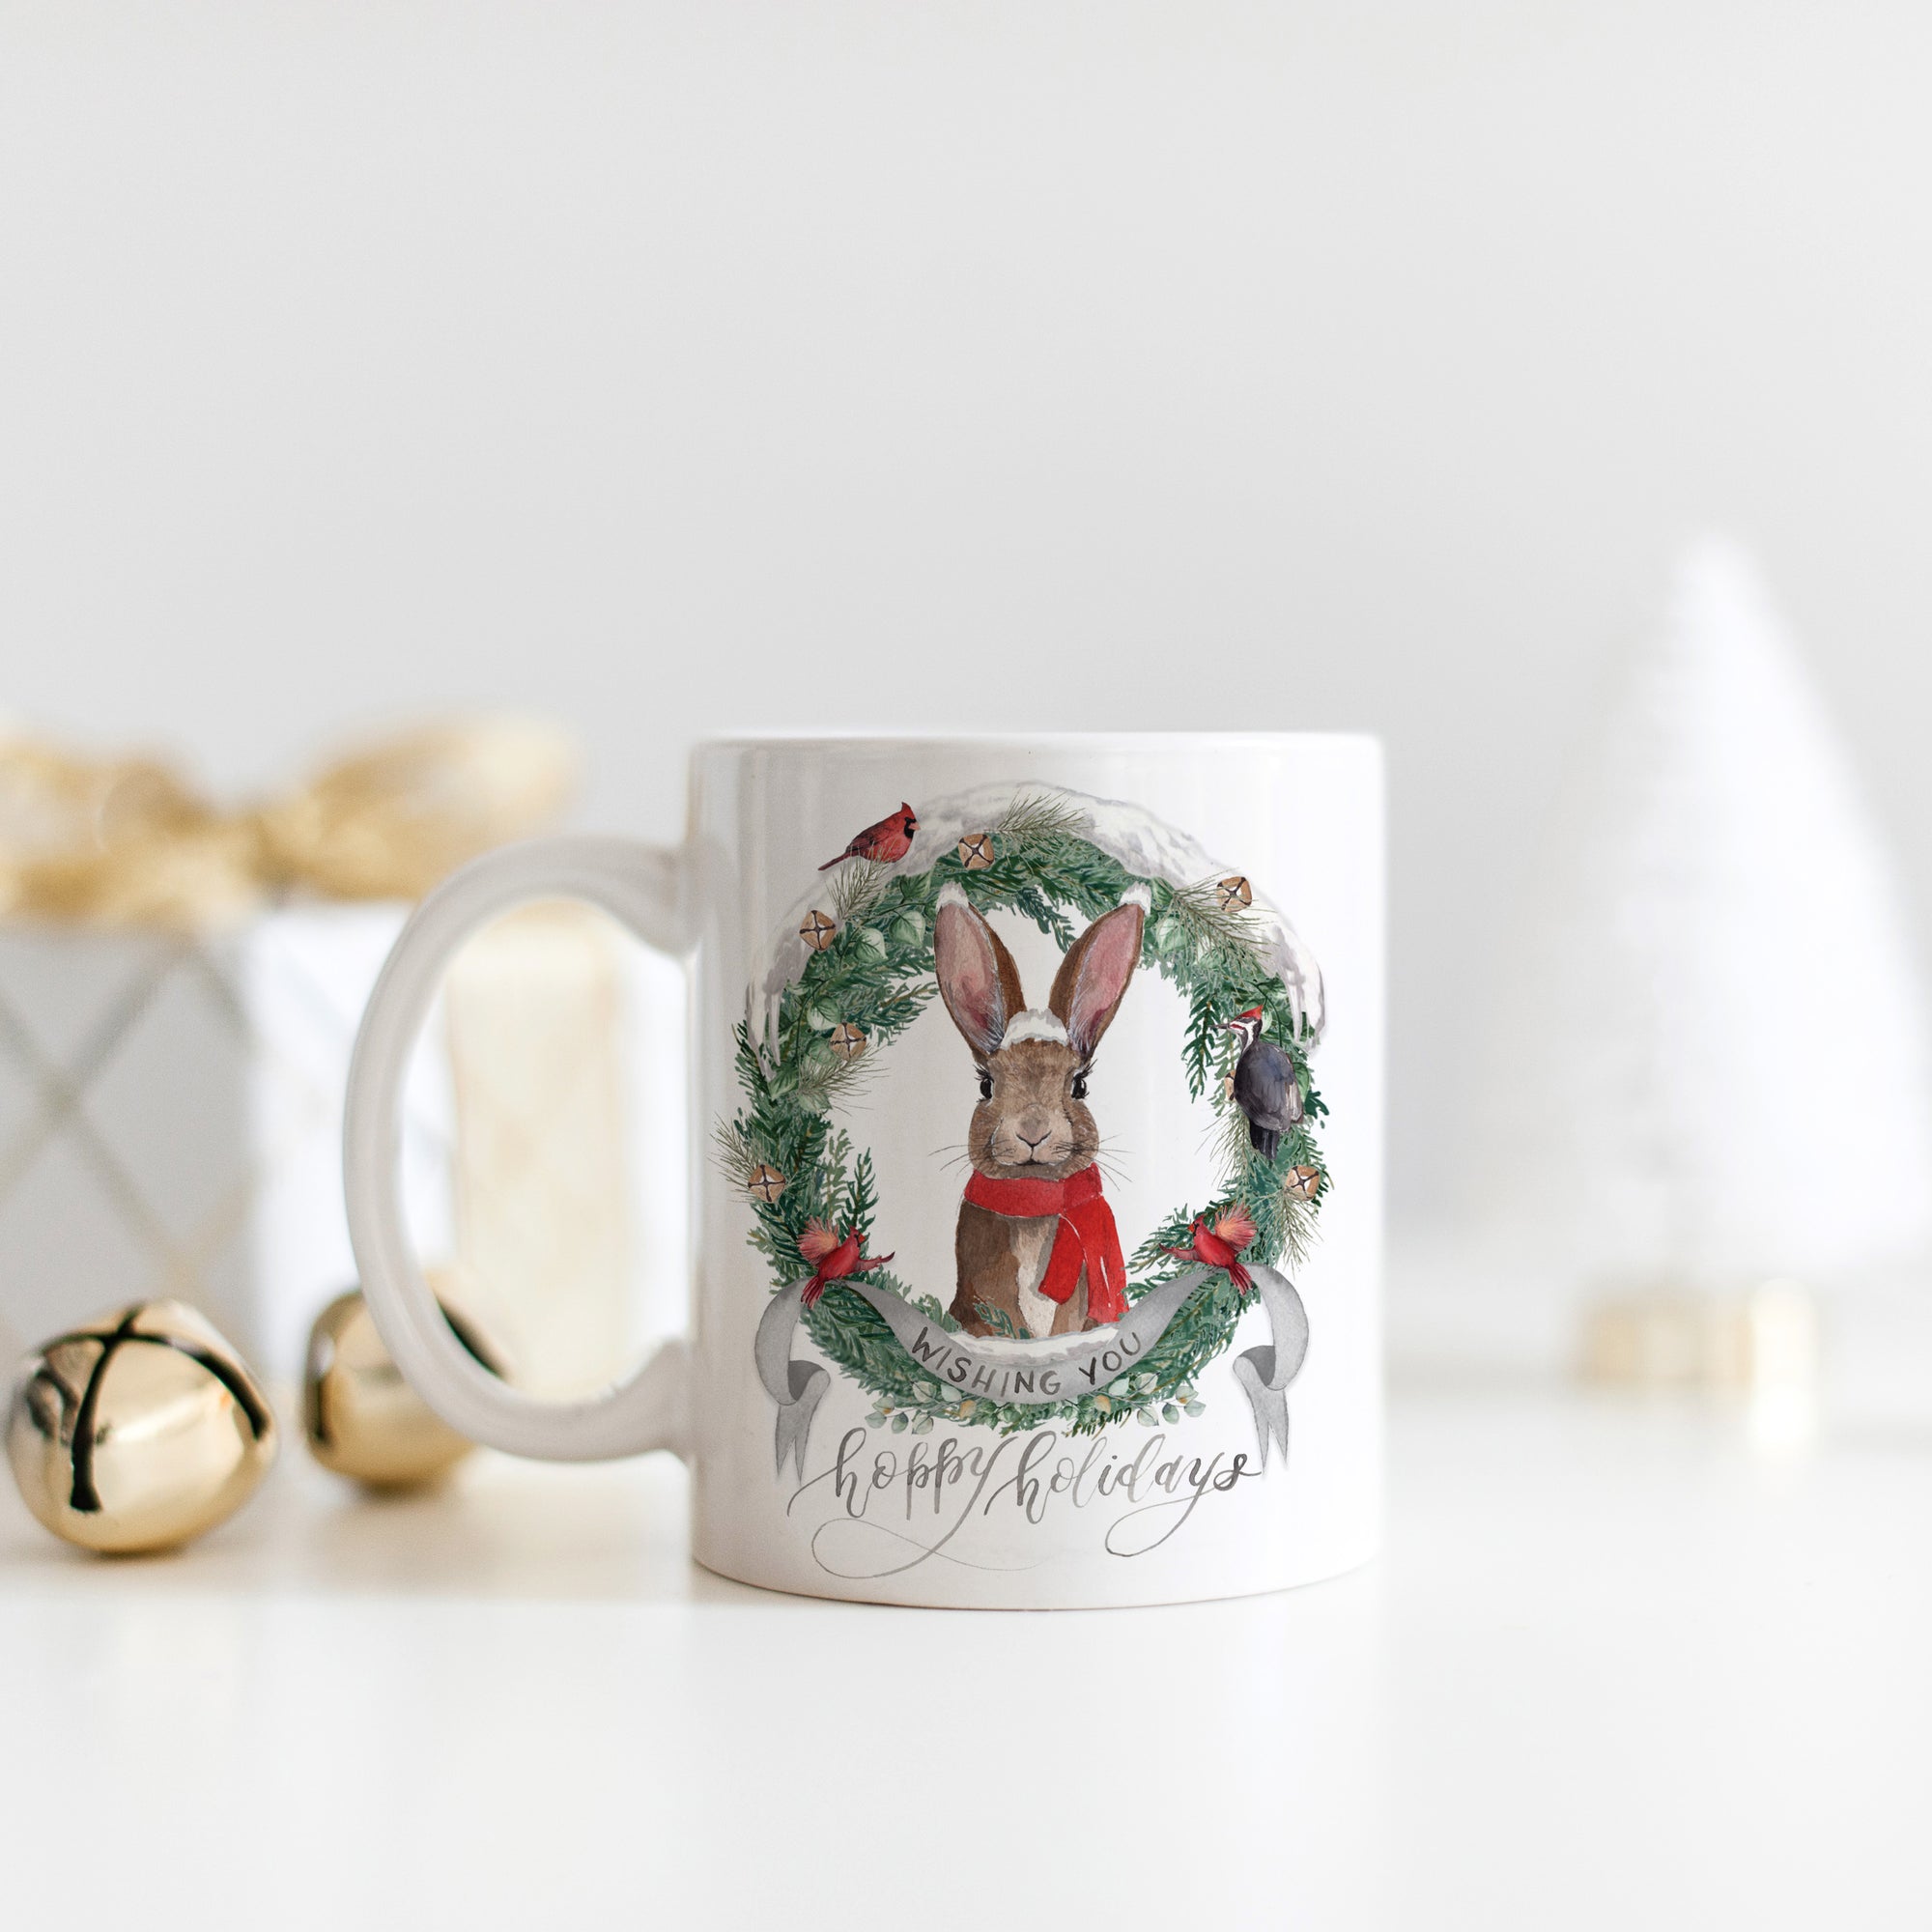 Wishing You Hoppy Holidays Mug